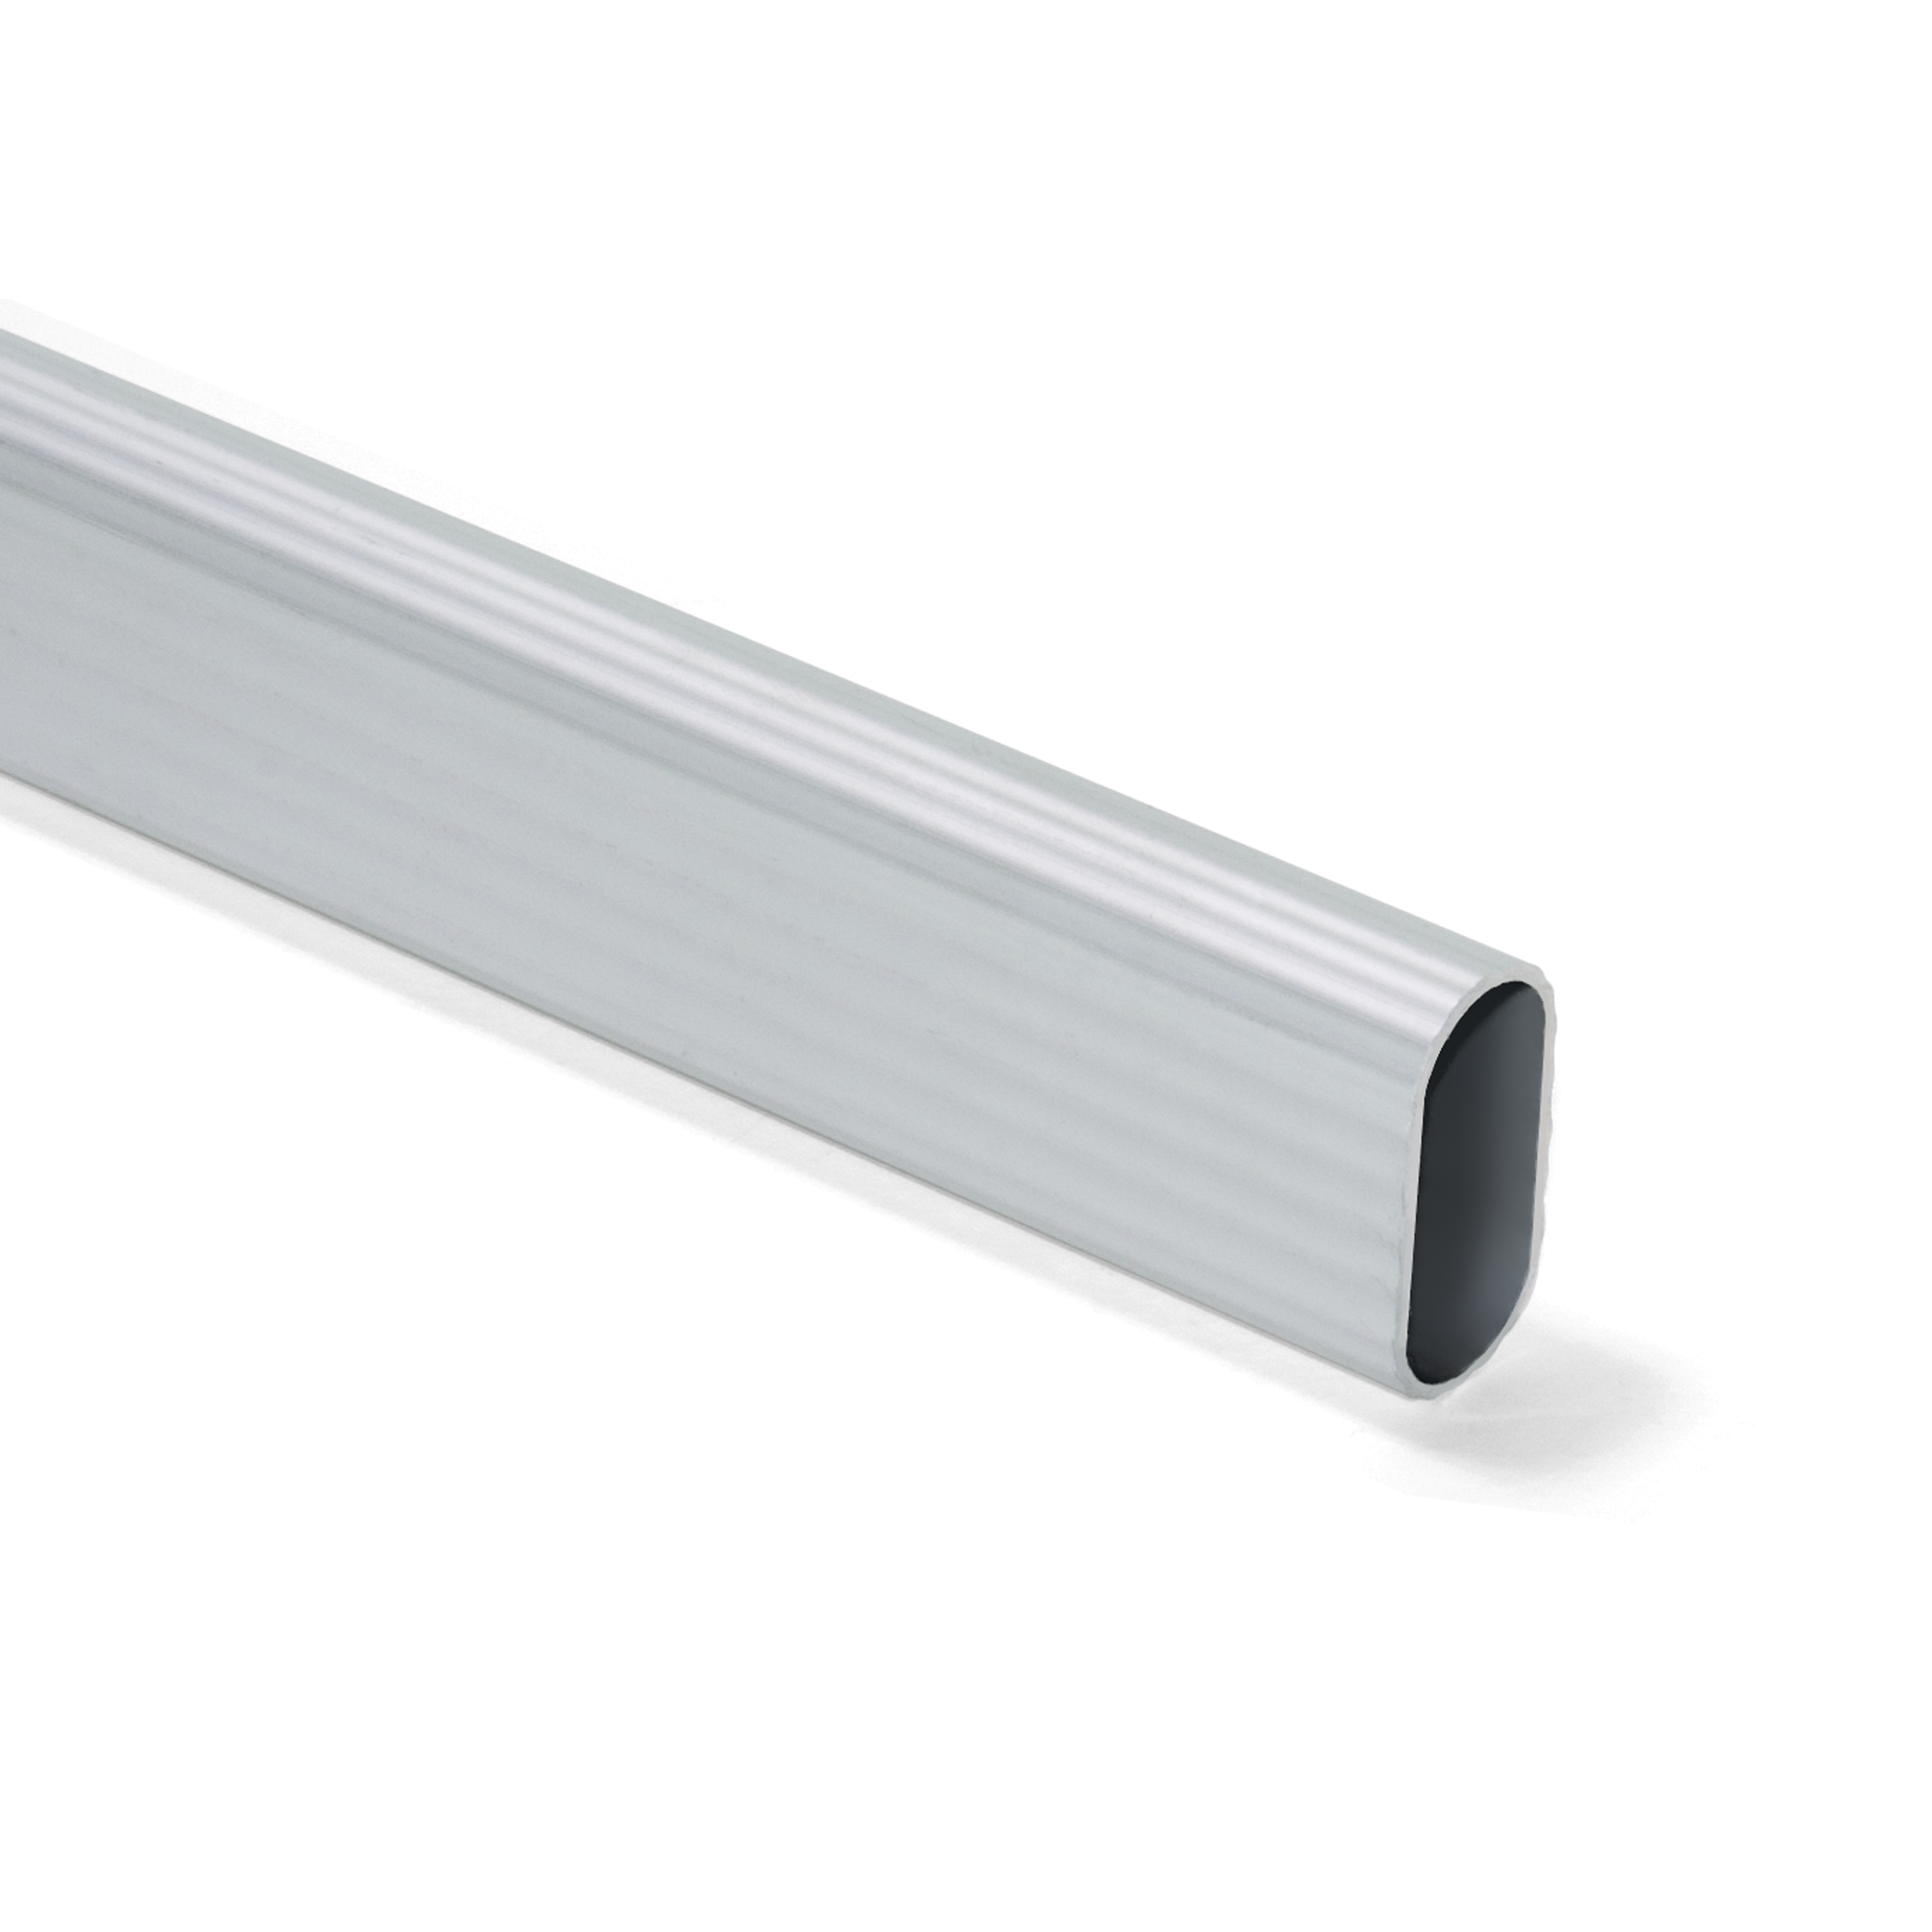 Kit barra in alluminio per armadio, 2,35 m, Anodizzato opaco, Alluminio